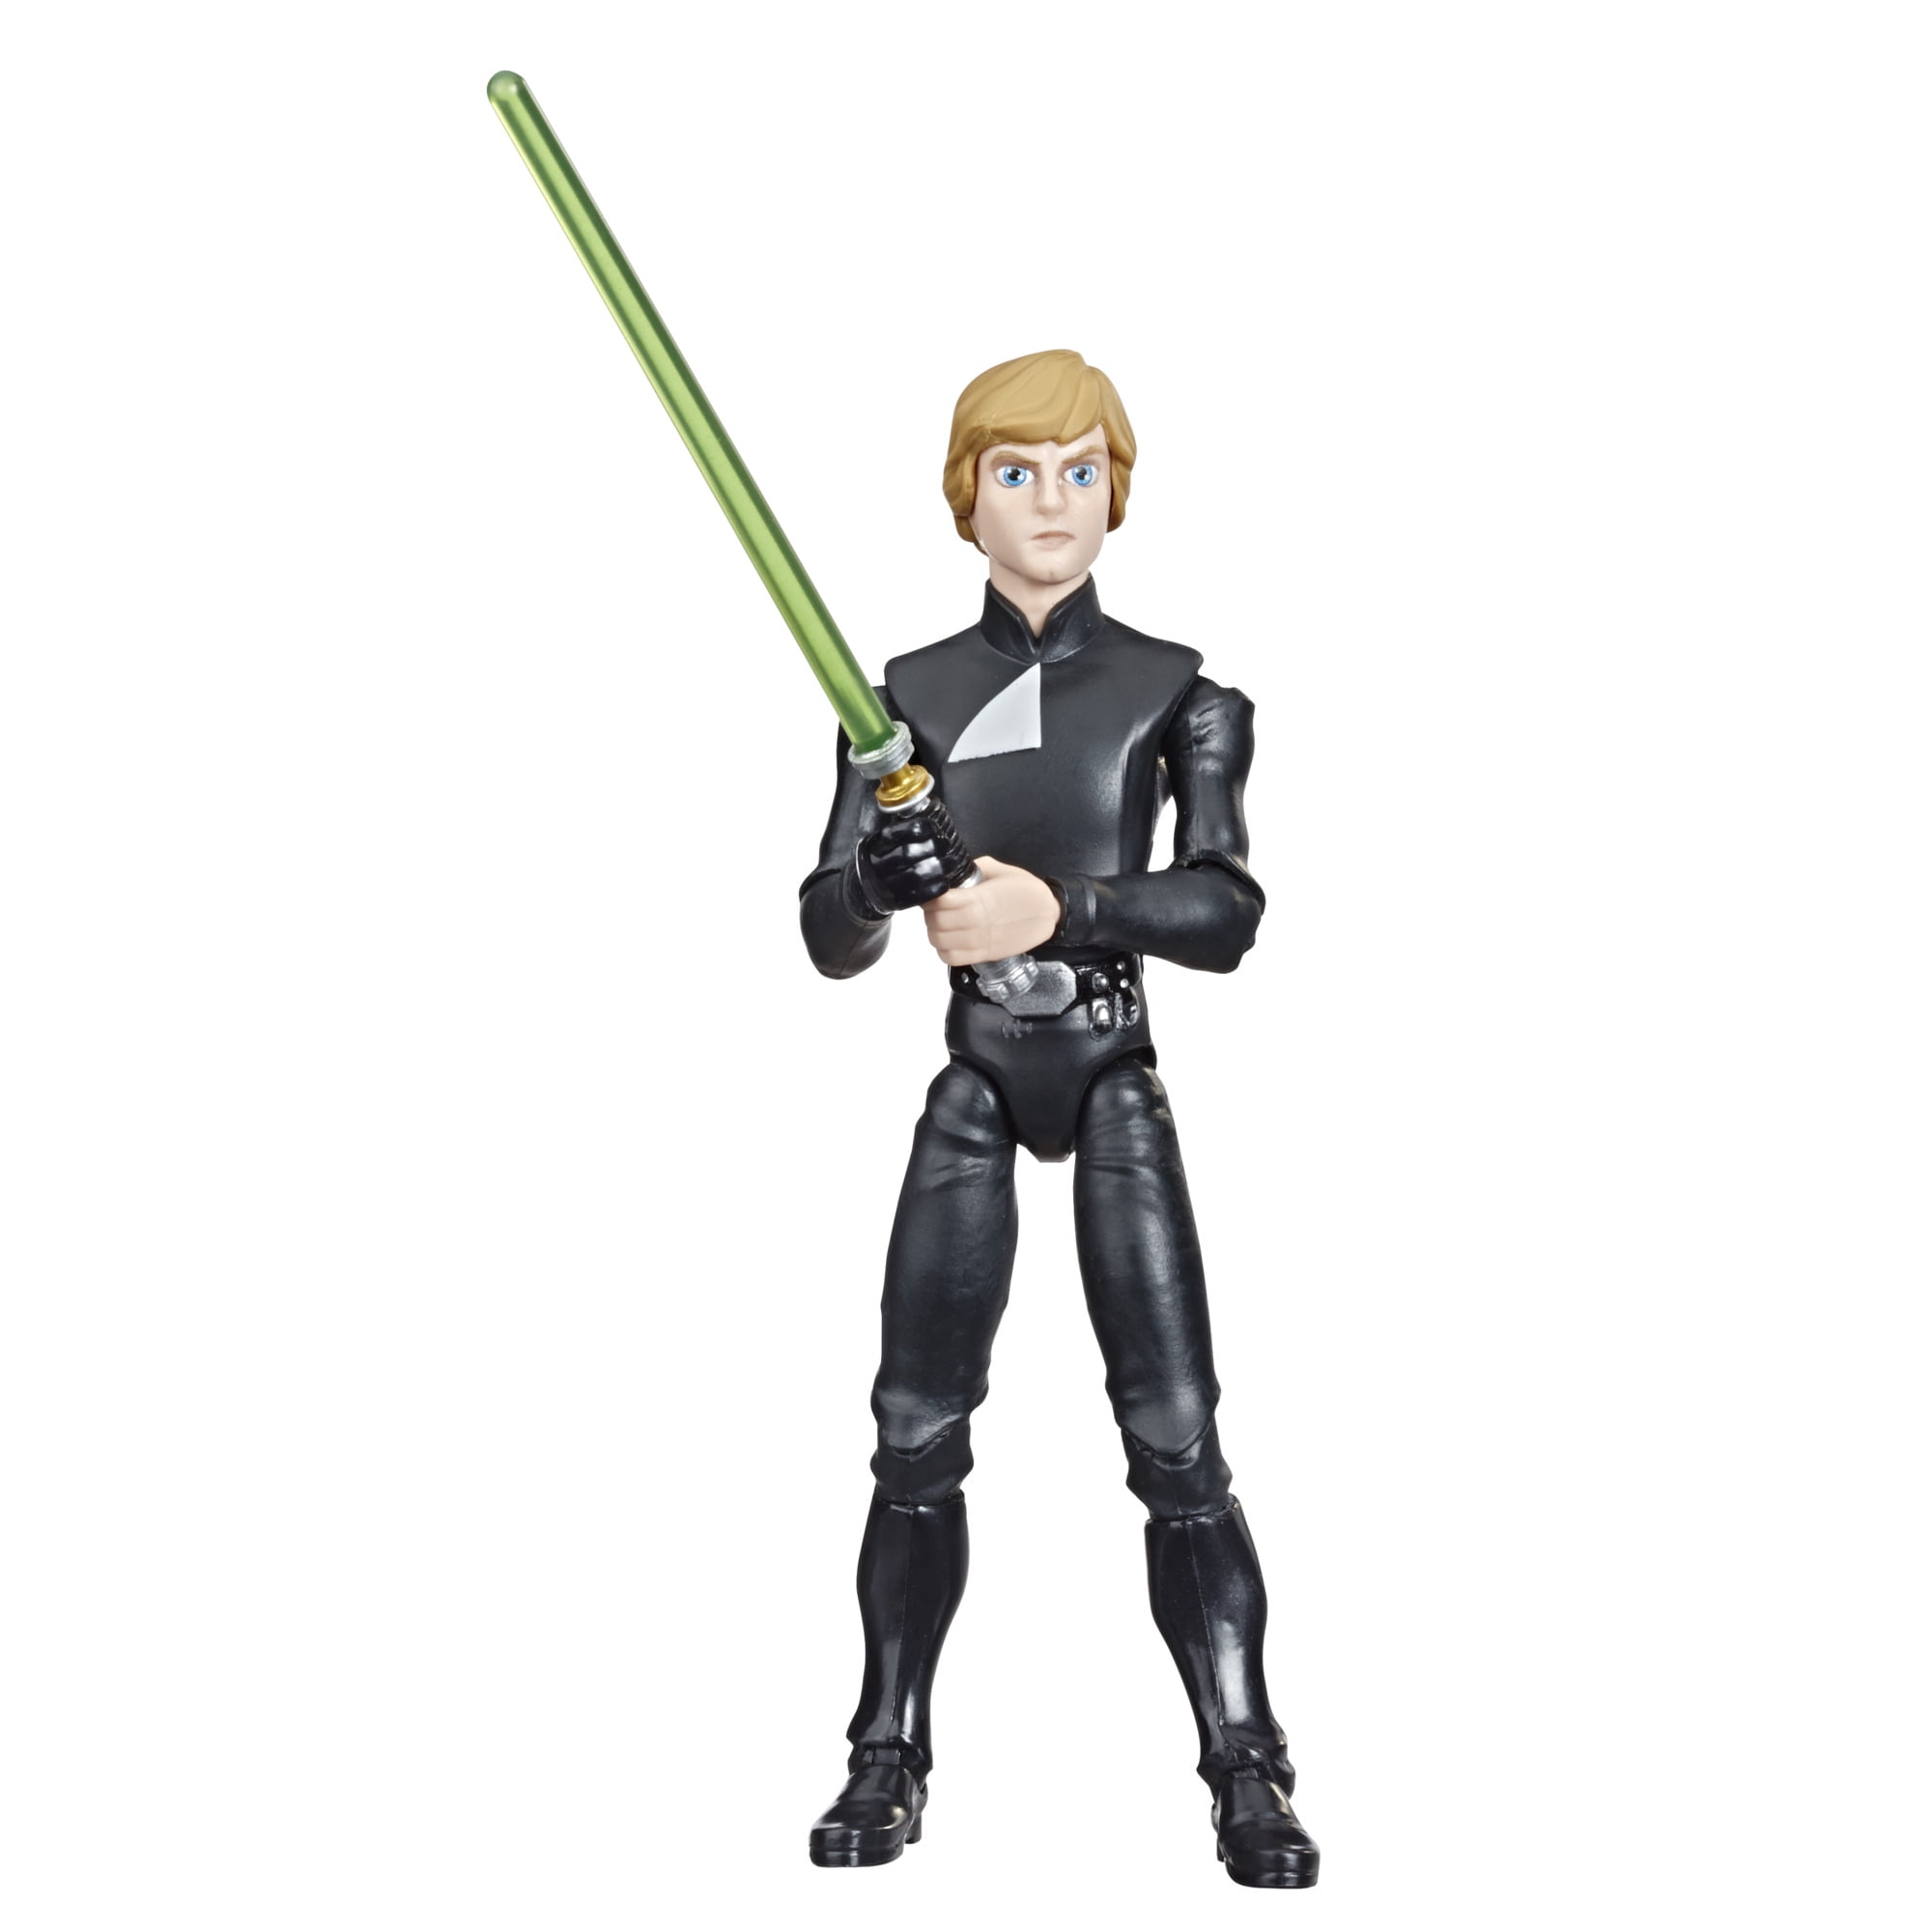 Aw9 Star Wars Galaxy of Adventures Luke Skywalker Jedi Knight Figure 2020 Hasbro for sale online 